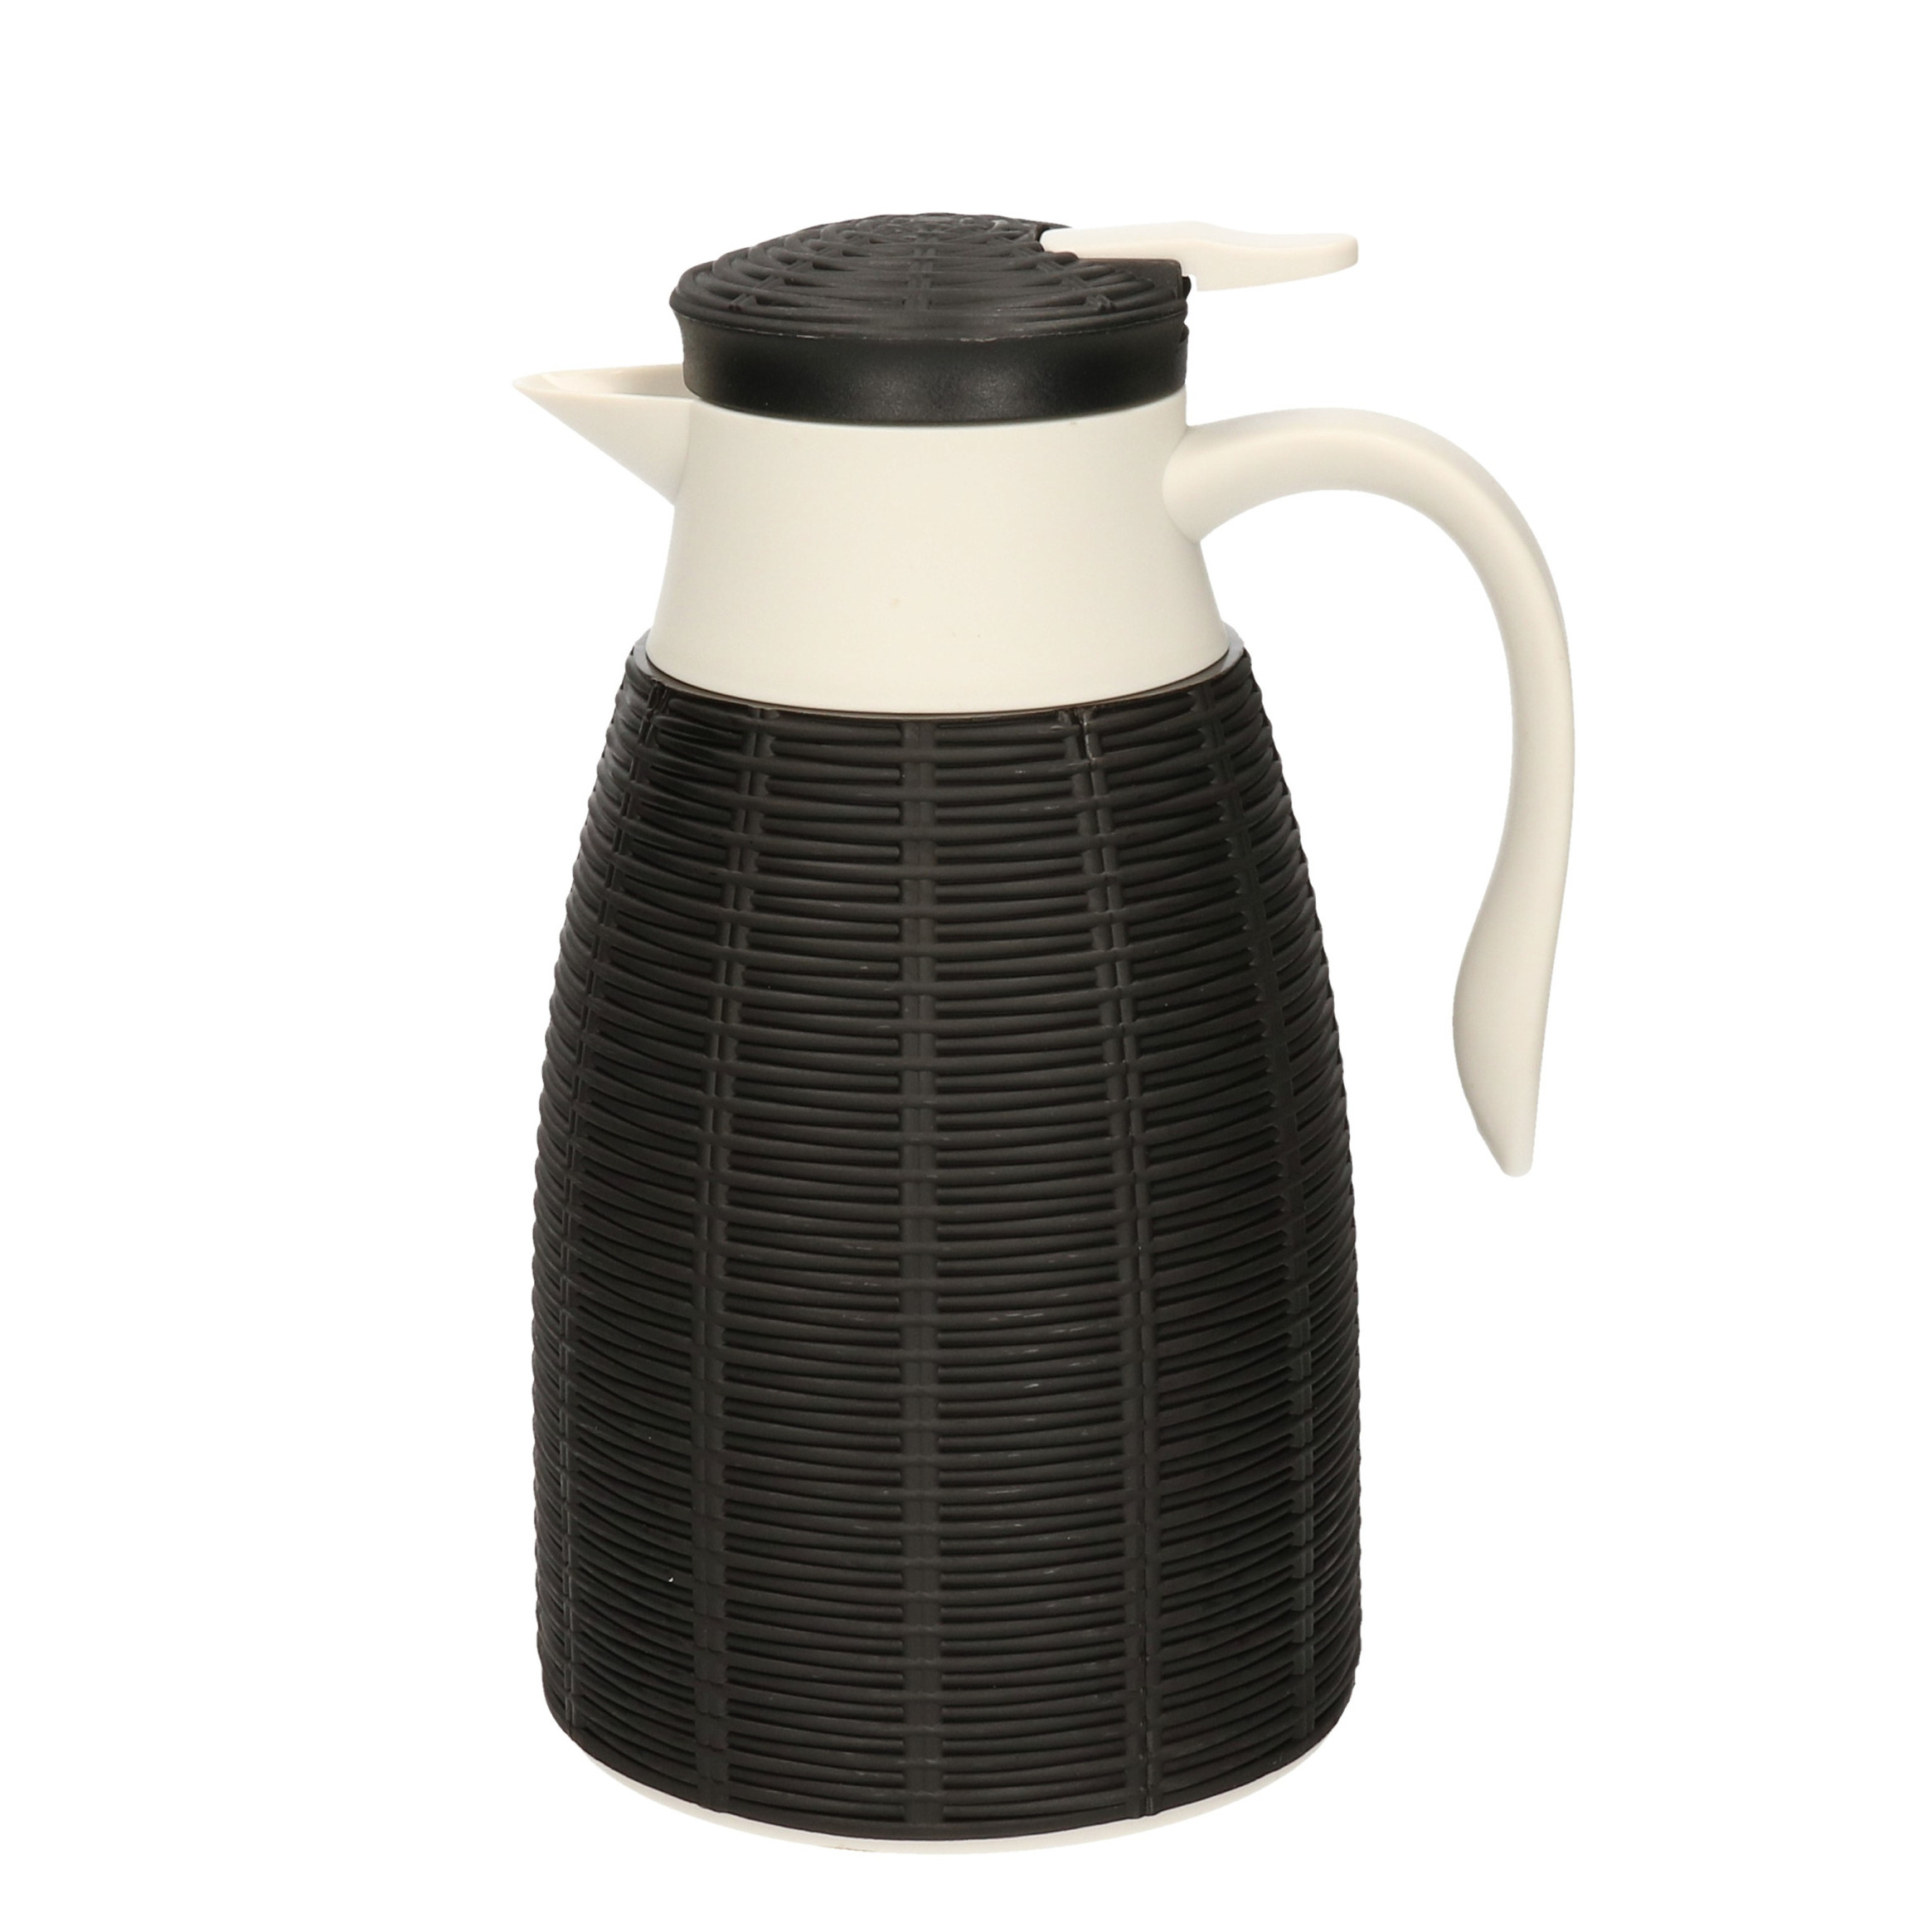 1x Zwarte rotan koffiekan/isoleerkan 1 liter - Koffiekannen/theekannen/isoleerkannen/thermoskannen